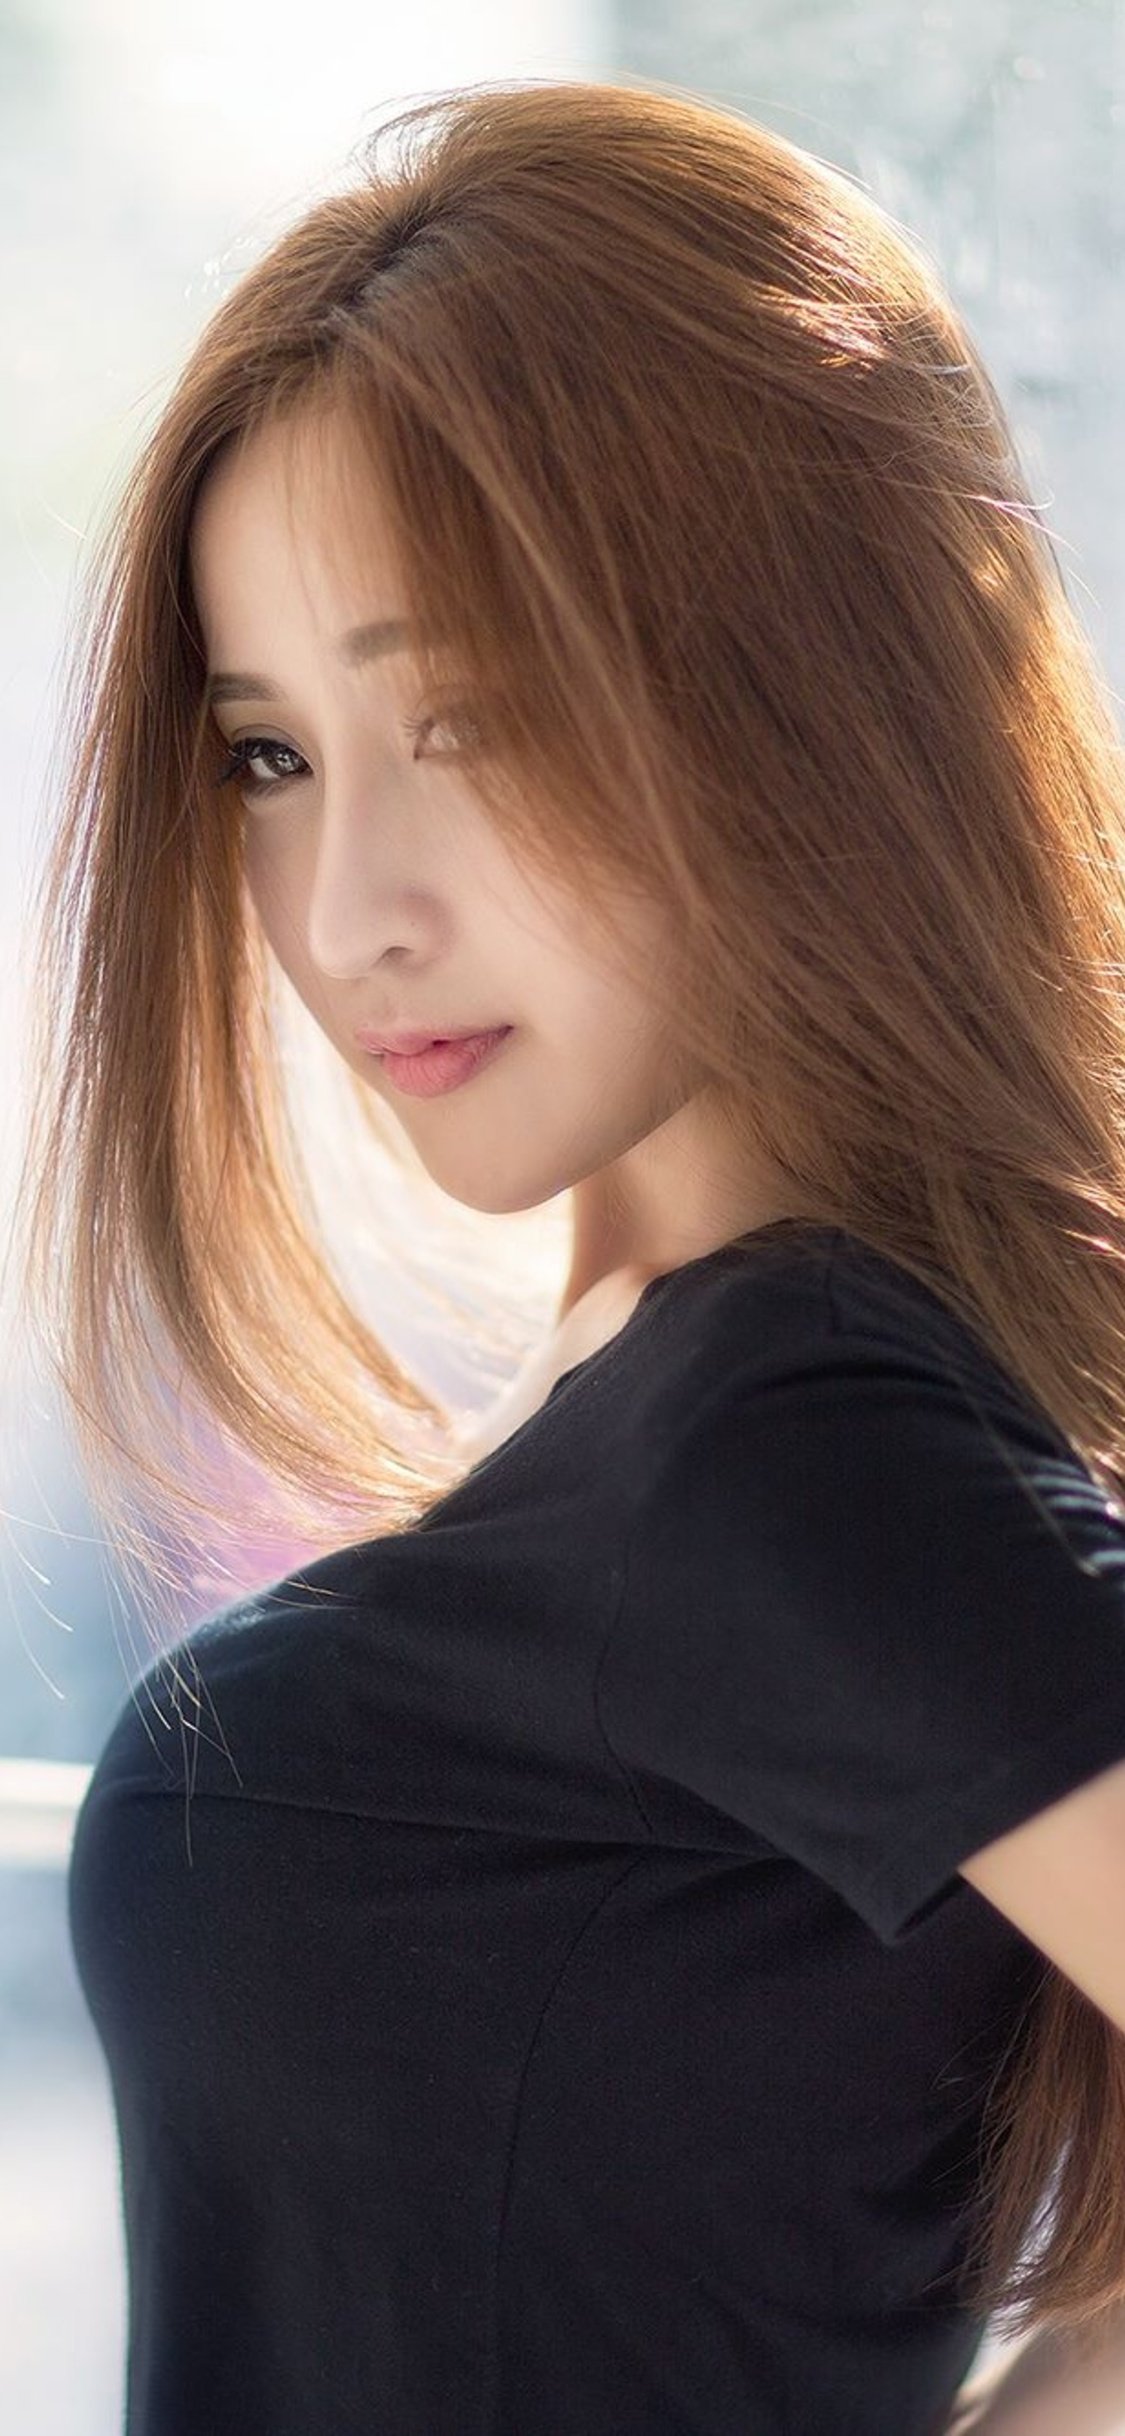 Asian Hot Girl iPhone XS